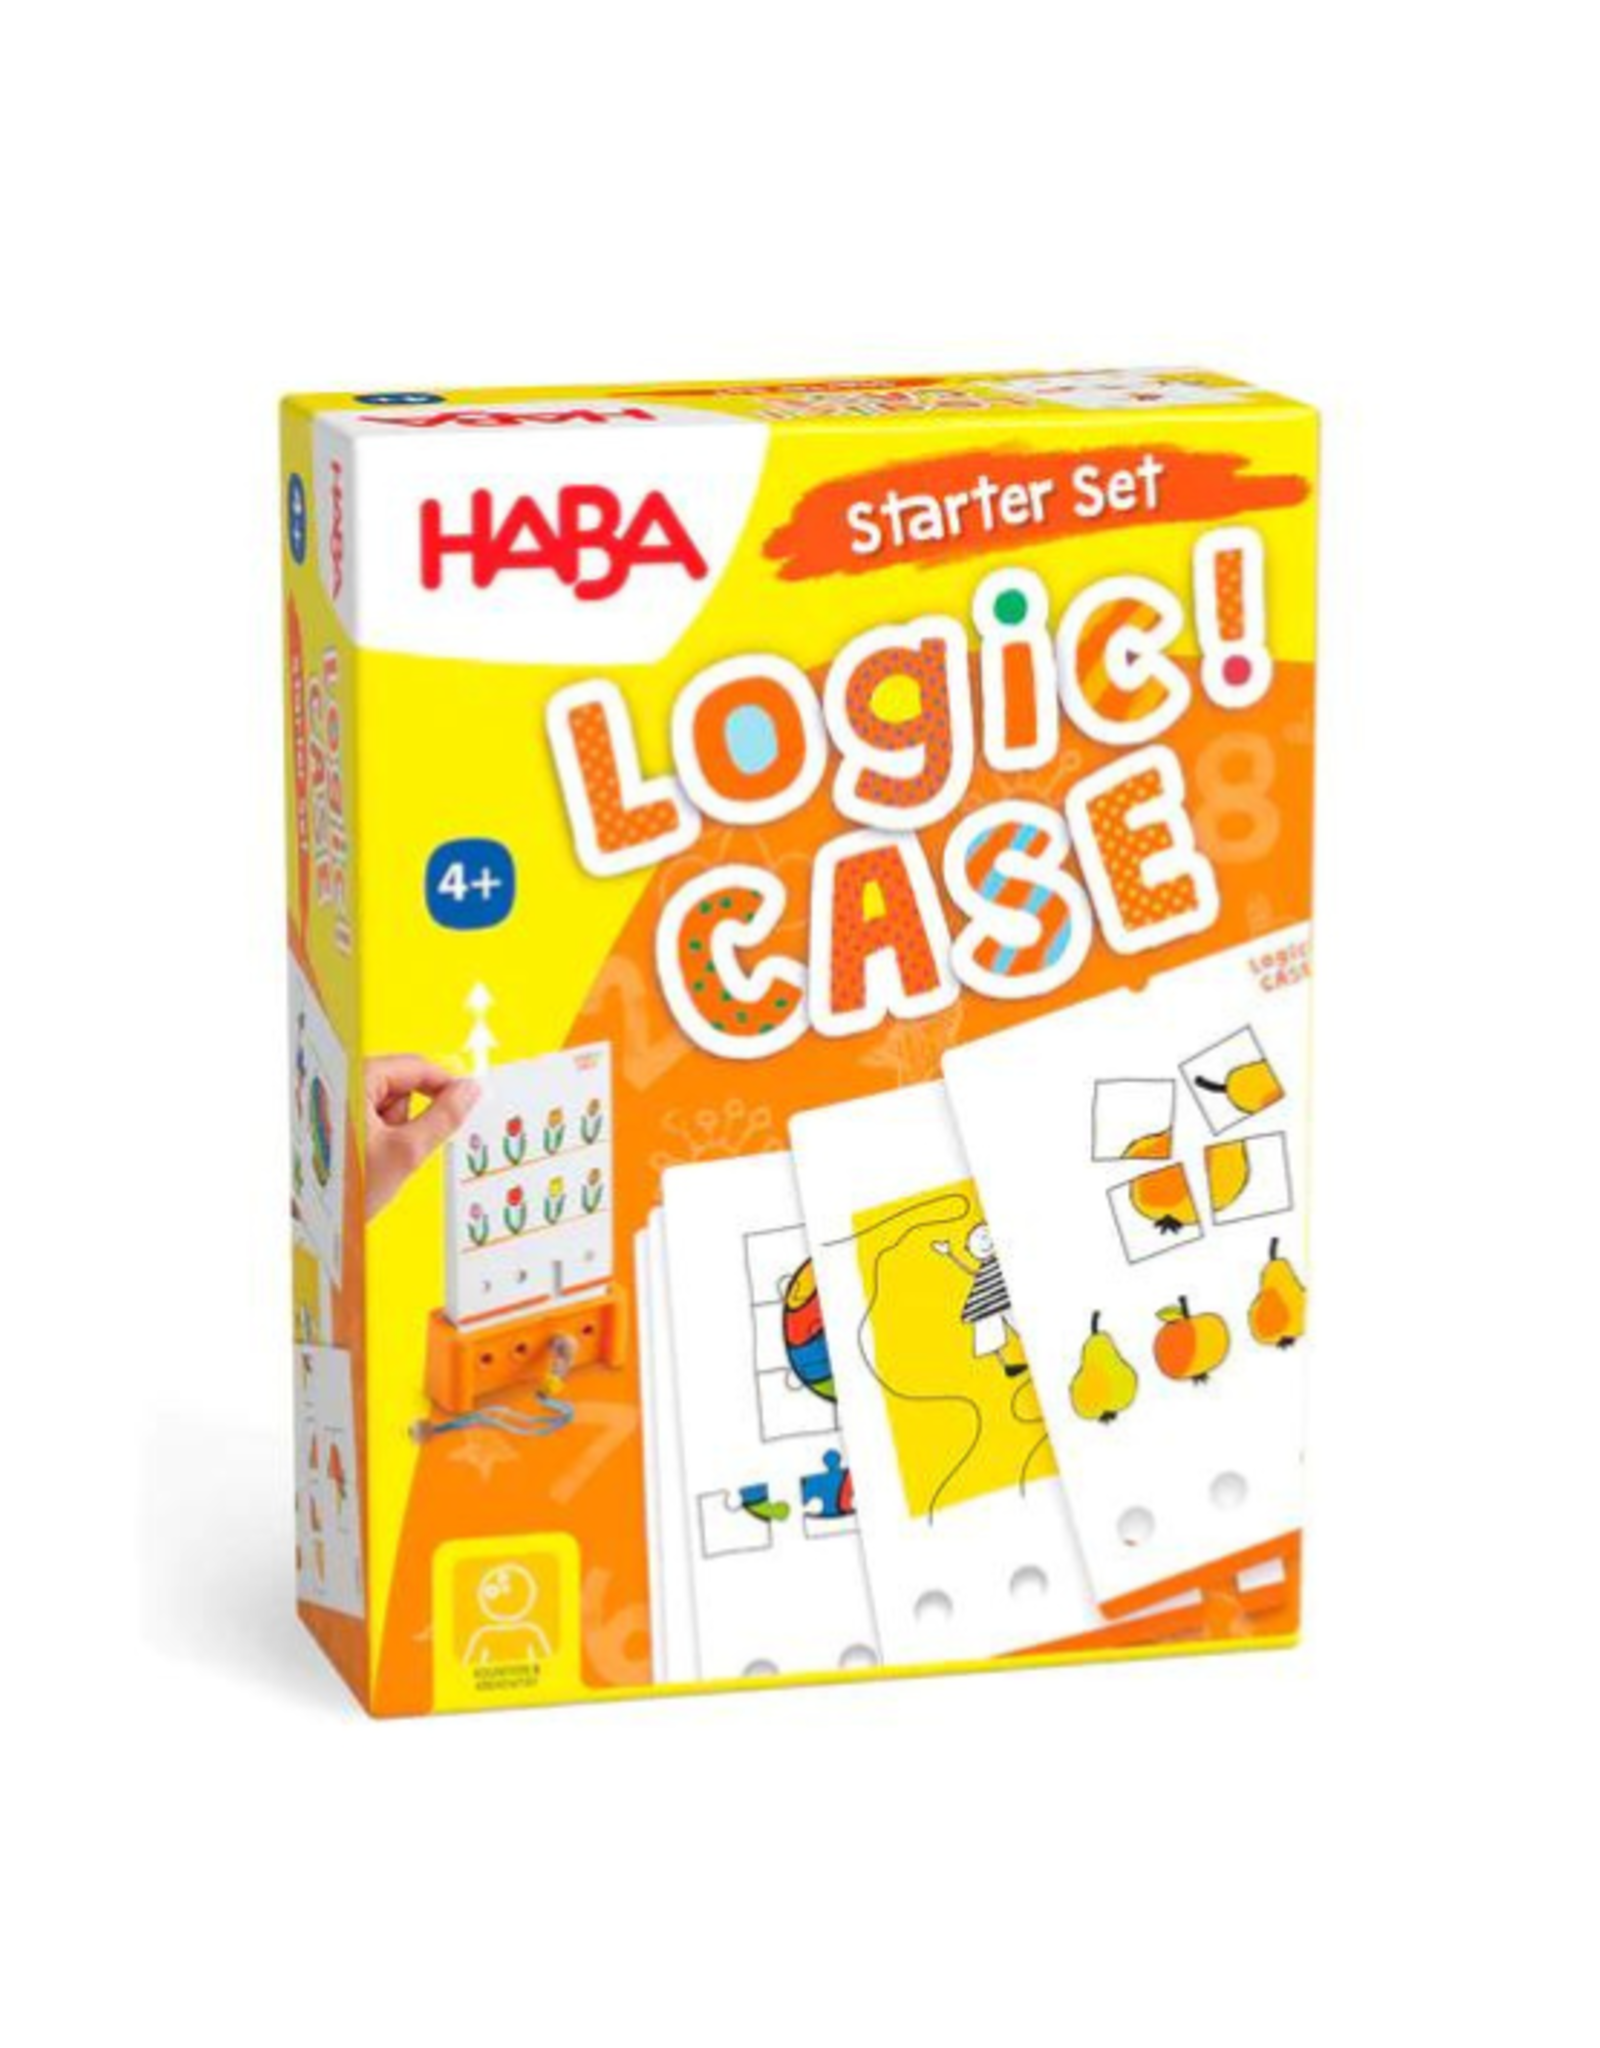 Haba Haba - Logic! Case Starter Set 4+